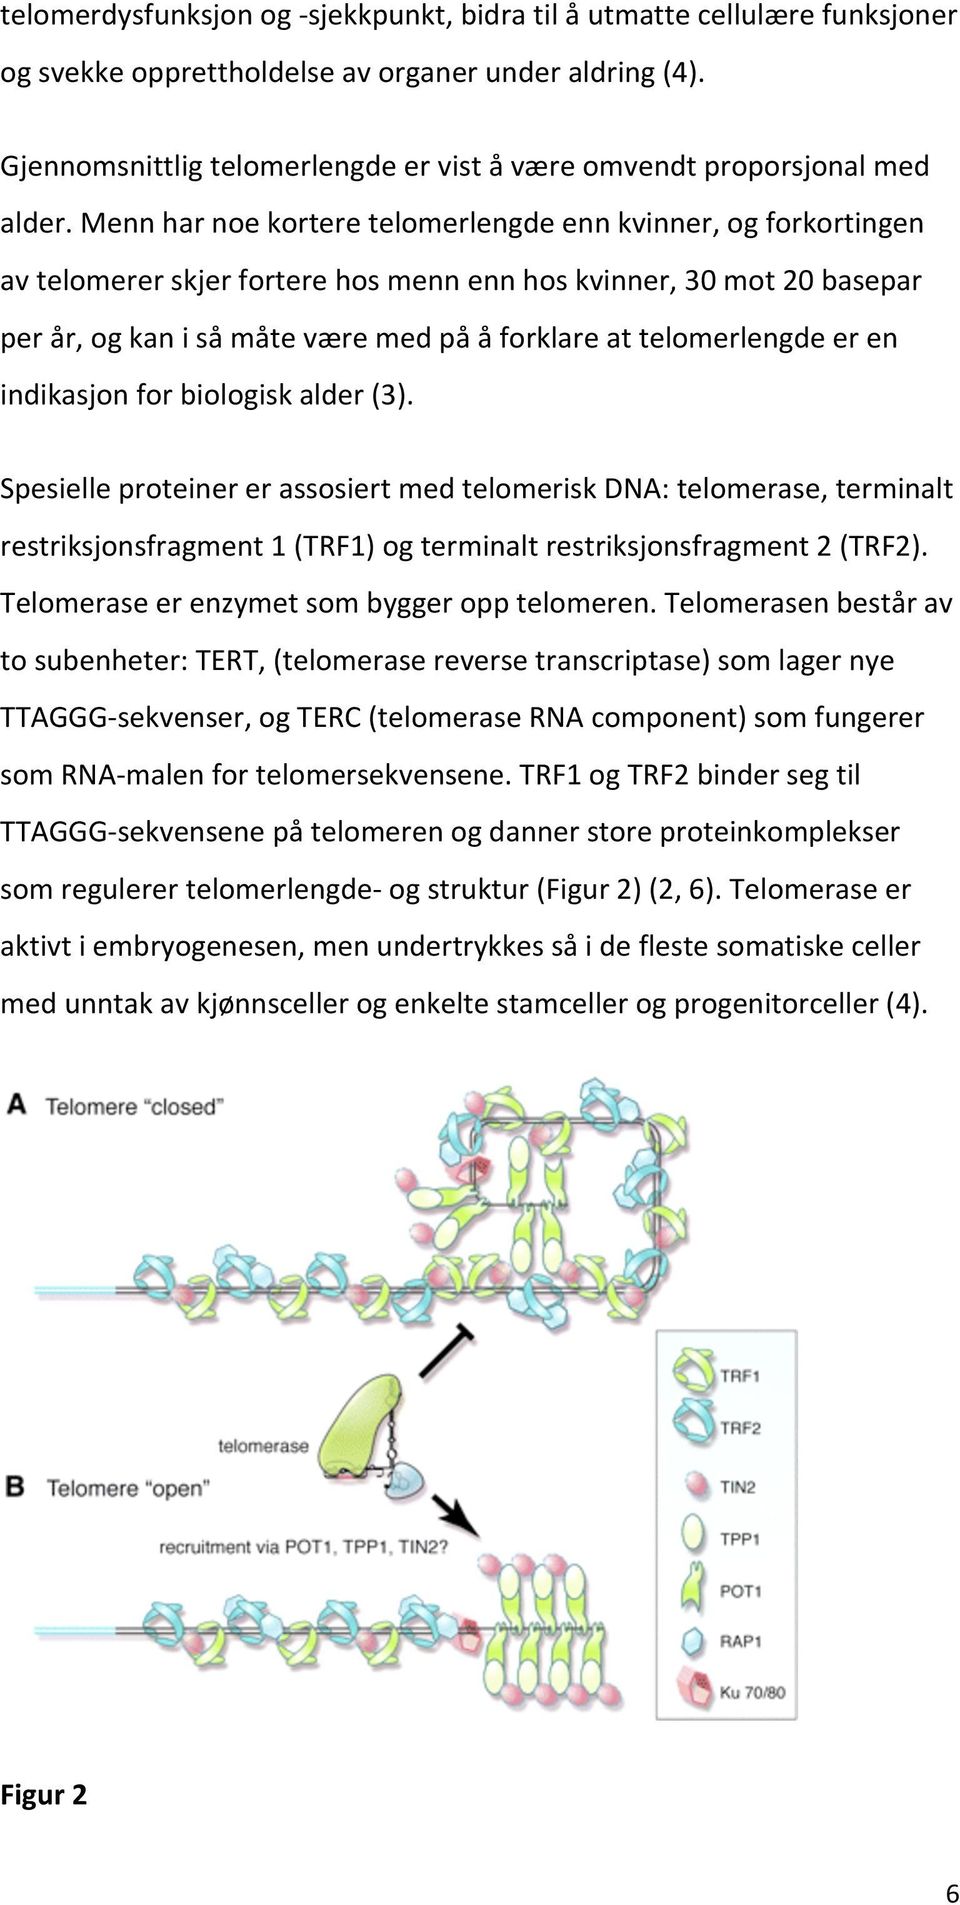 indikasjonforbiologiskalder(3). SpesielleproteinererassosiertmedtelomeriskDNA:telomerase,terminalt restriksjonsfragment1(trf1)ogterminaltrestriksjonsfragment2(trf2).